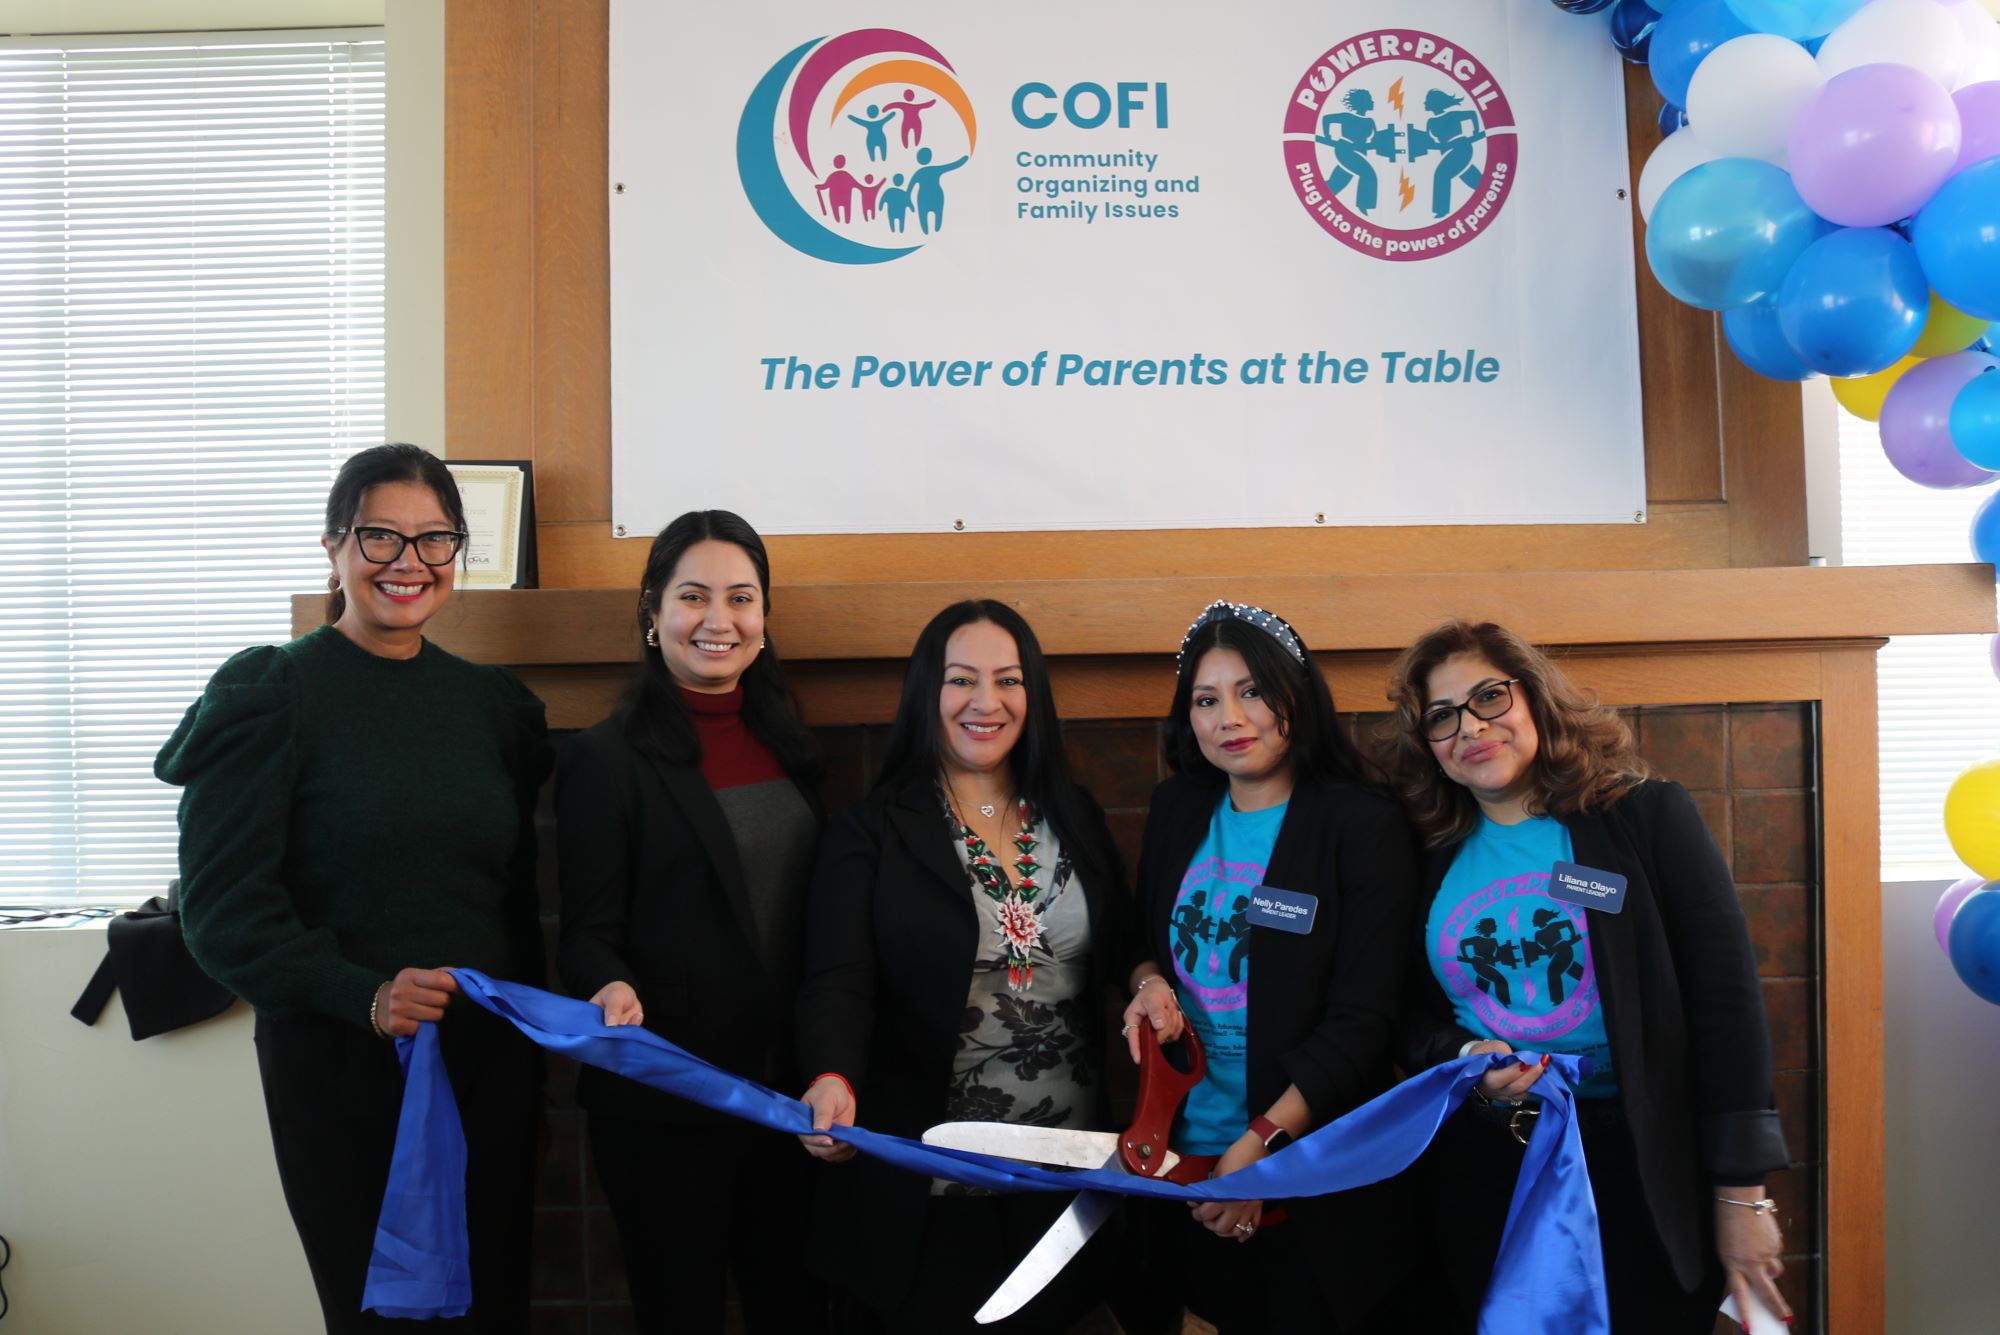 La senadora del estado de Illinois, Karina Villa, y la representante del estado de Illinois, Bárbara Hernández, se unen a los padres de COFI, Nelly y Liliana, para el corte de listón. Las mujeres sostienen una cinta azul y tijeras.